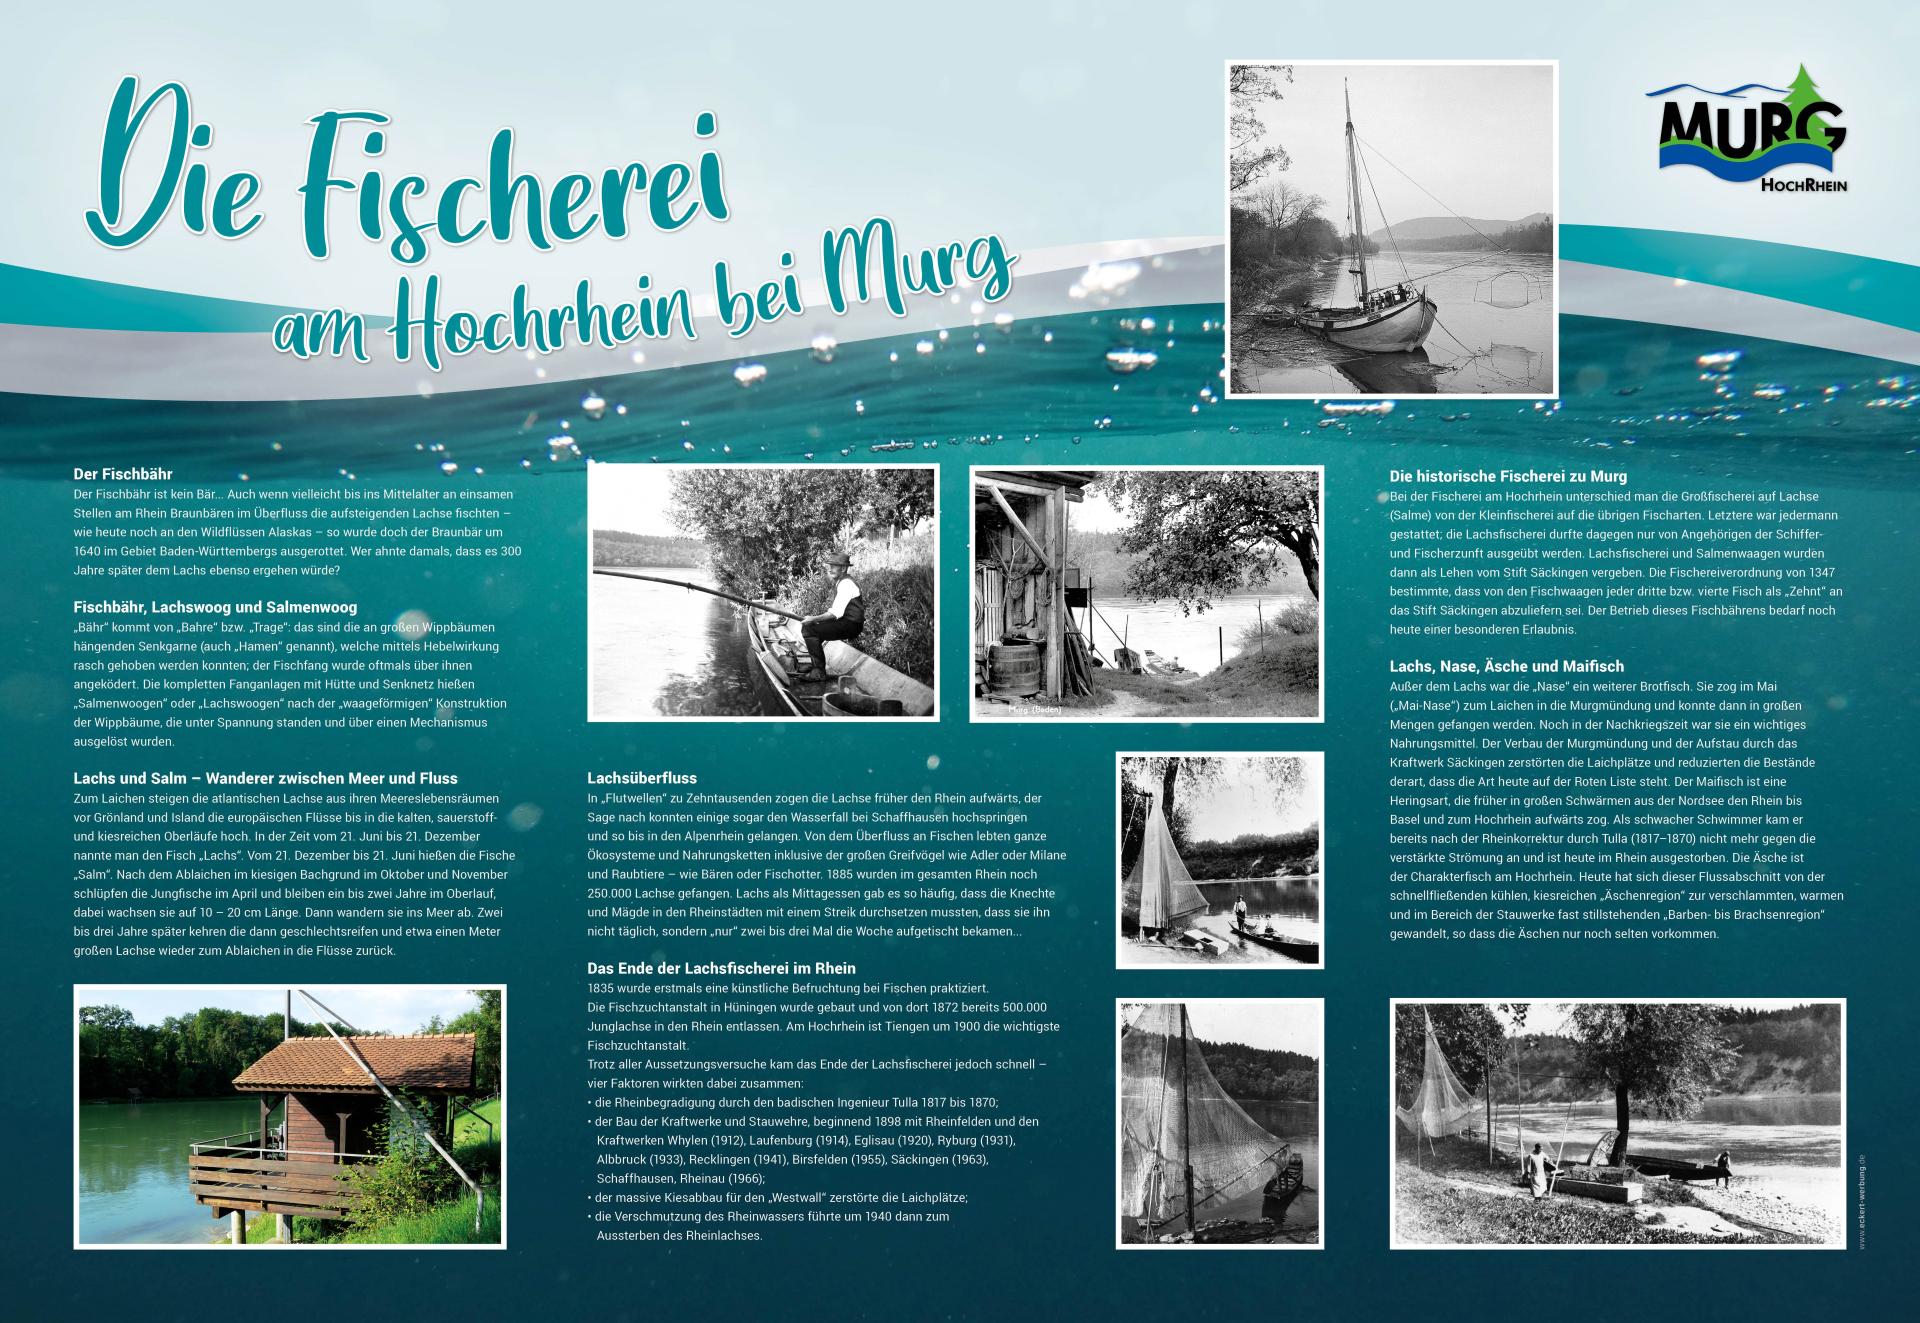 Fischerei am Hochrhein